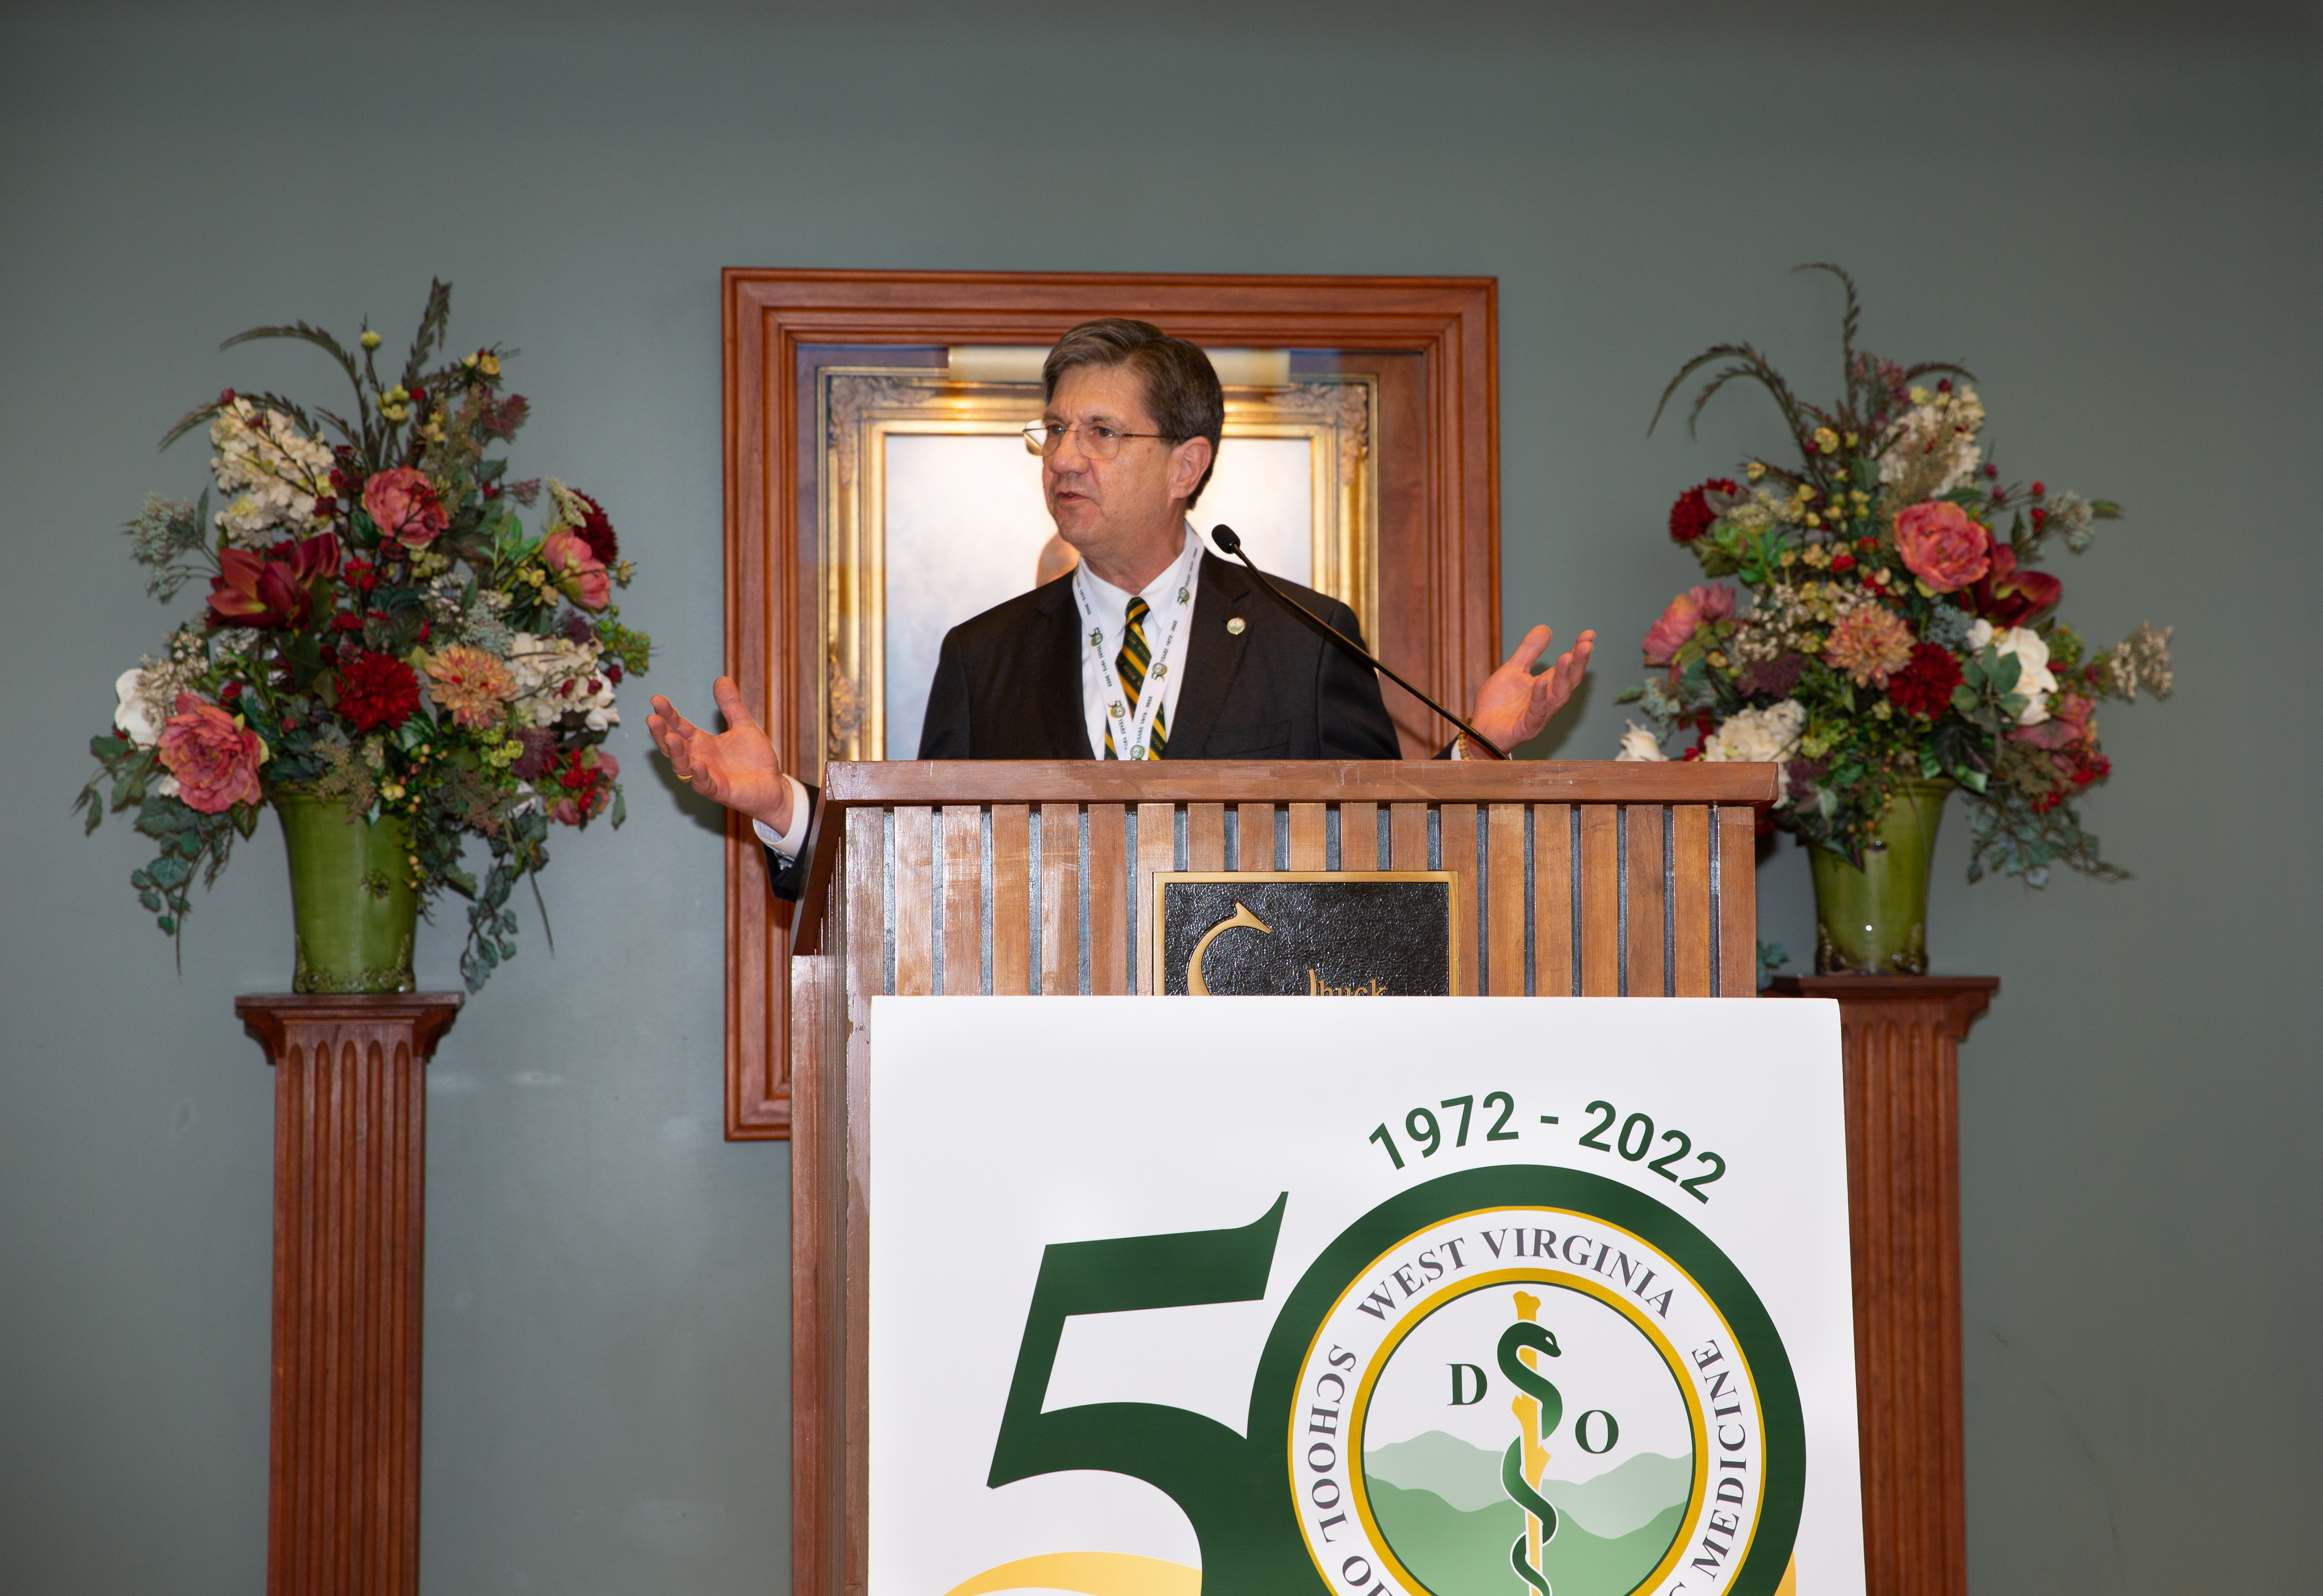 President Nemitz speaking at podium